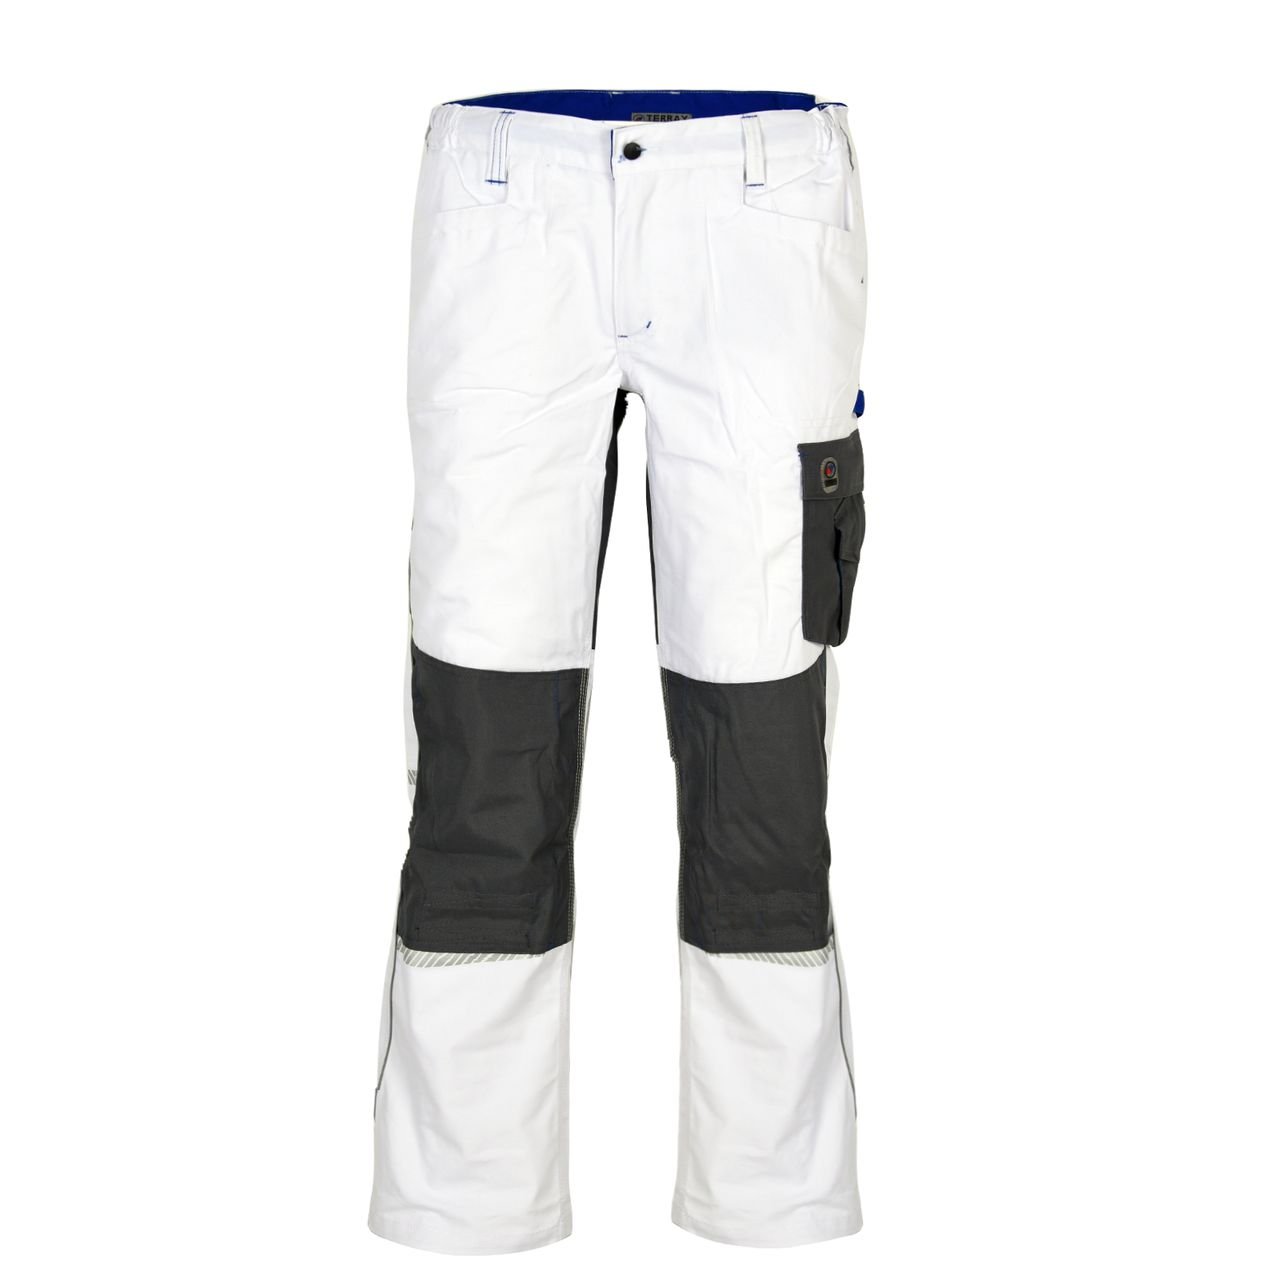 Terrax Workwear Herren Bundhose, Weiß/Royal, Größe:56, Farbe:Weiß/Royal